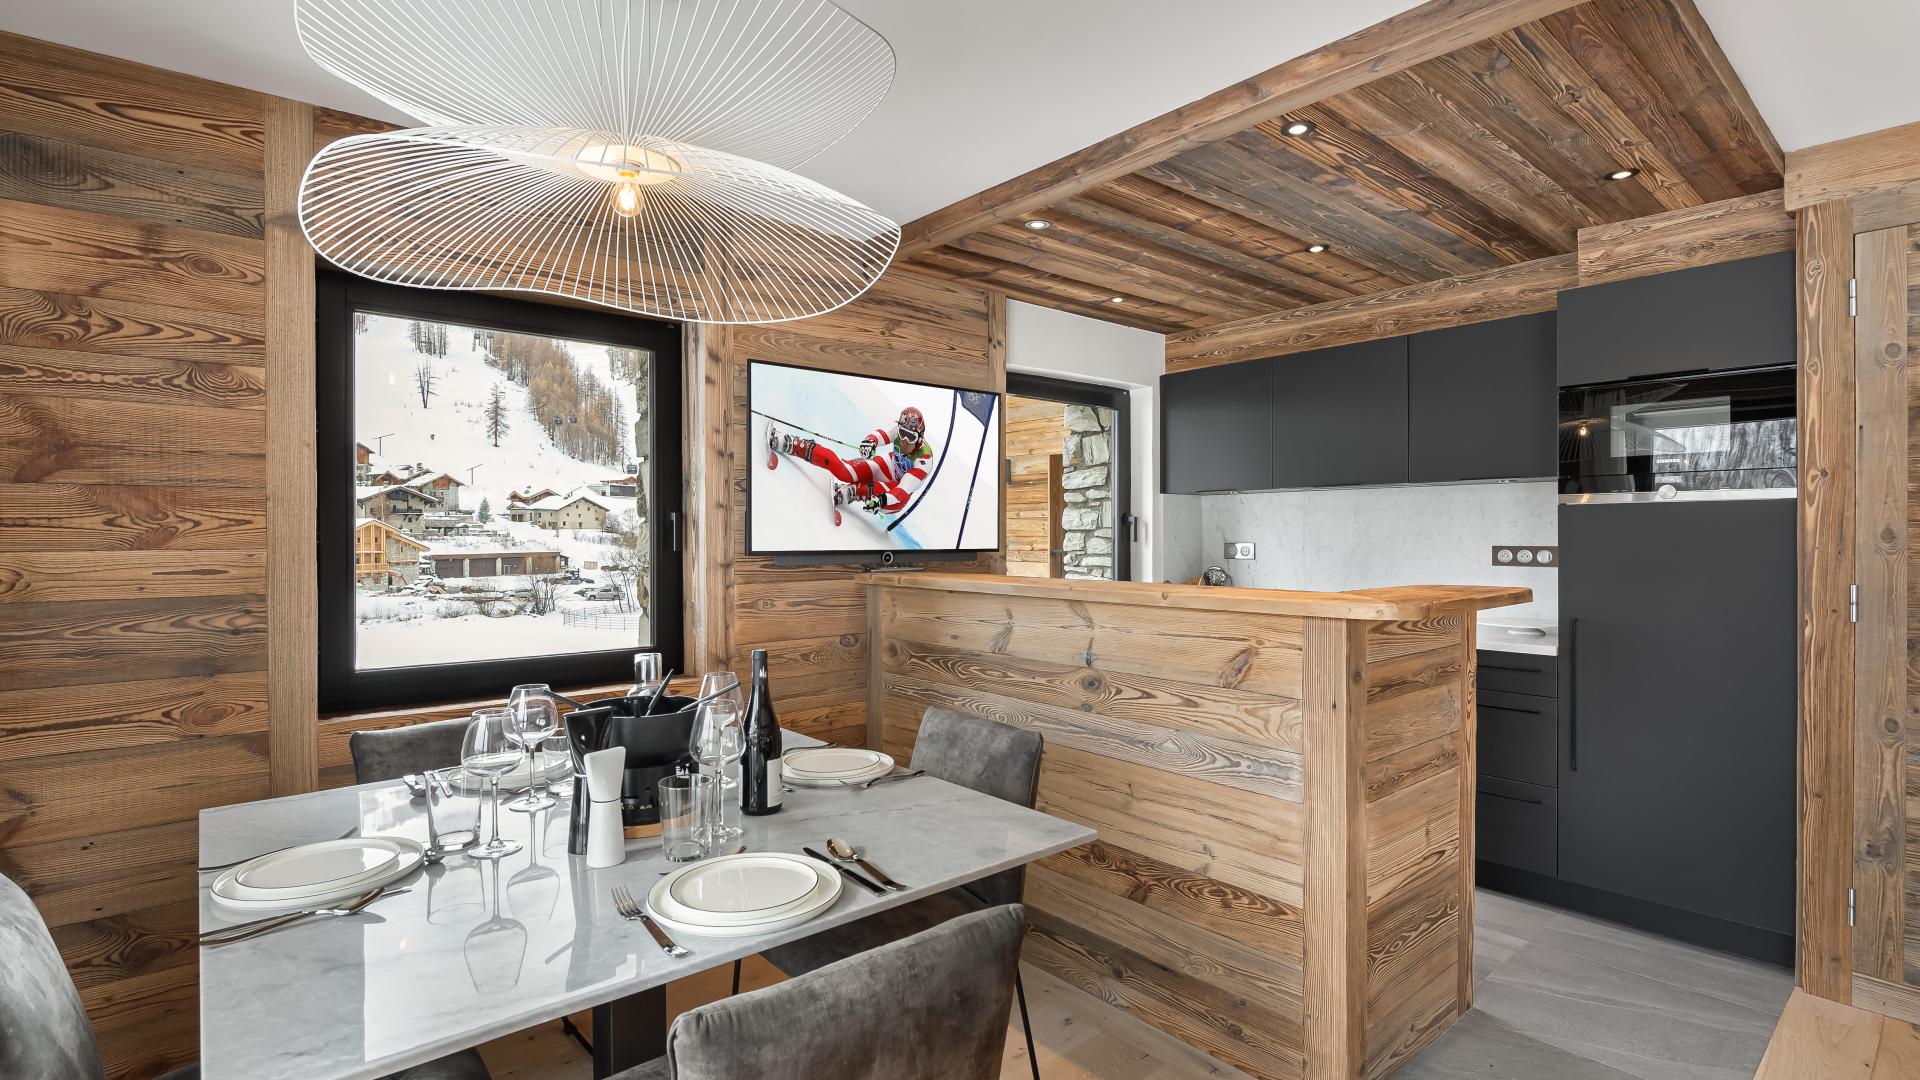 Appartement Flocon 9 - Location chalets Covarel - Val d'Isère Alpes - France - Salle à manger